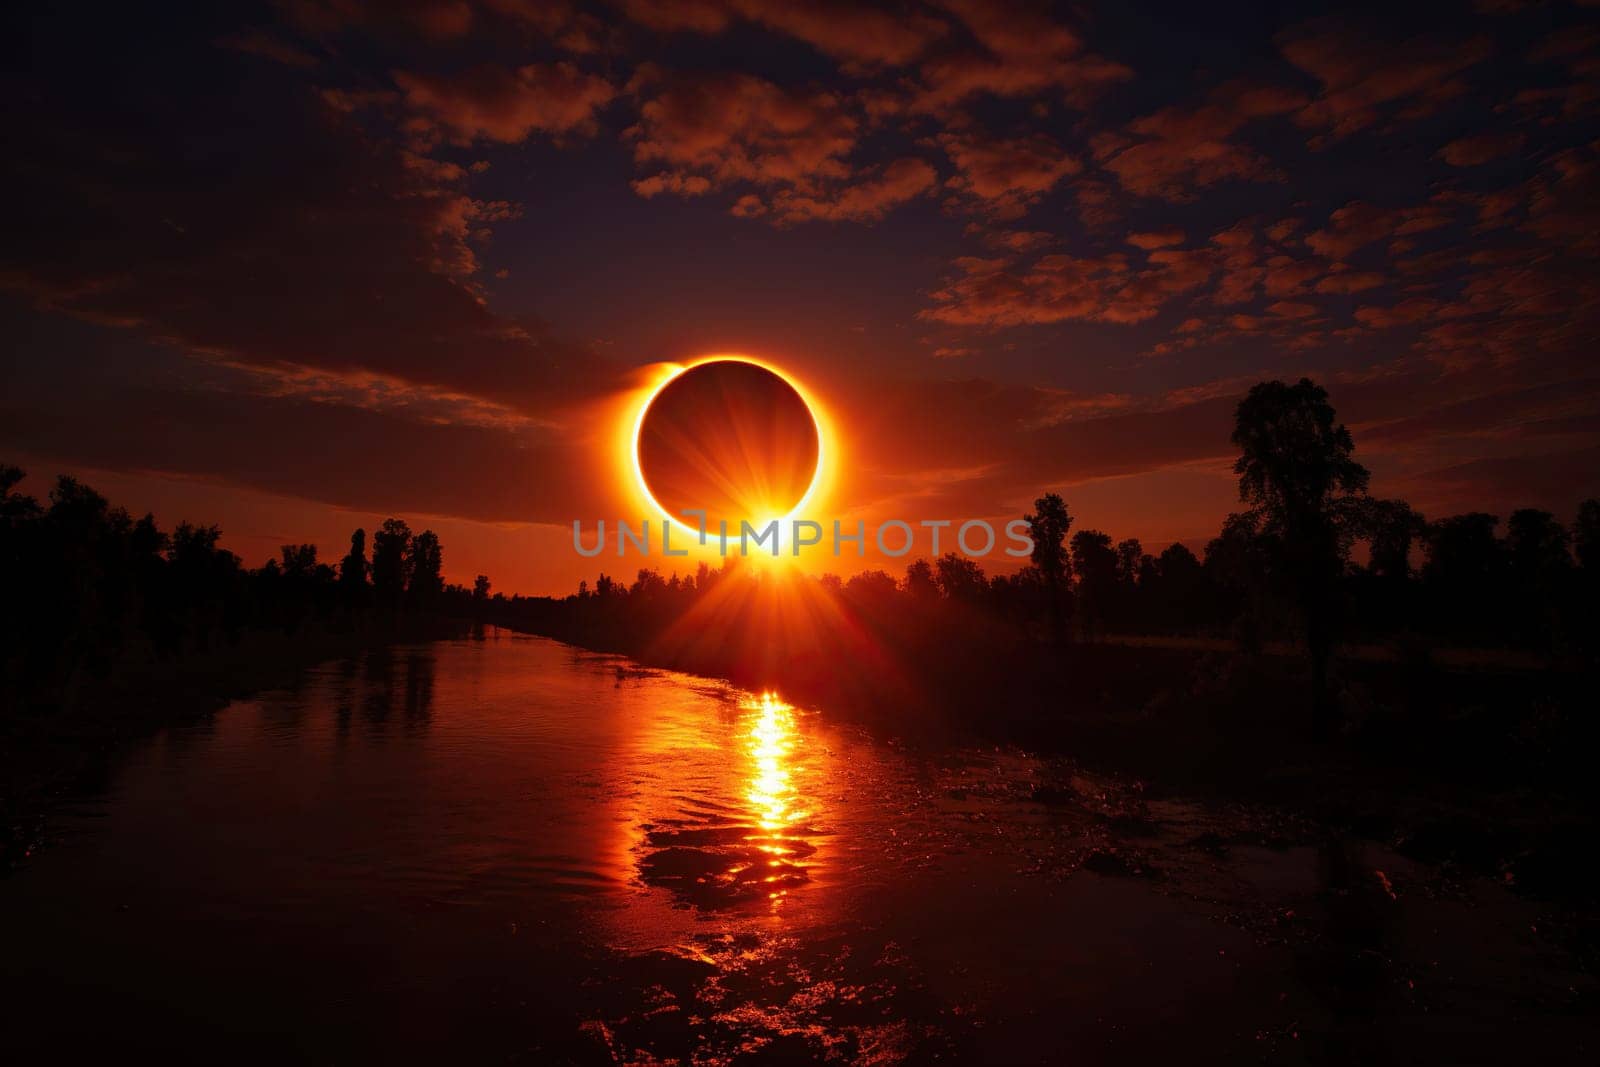 Natural phenomenon - total solar eclipse, river, trees in the dark.